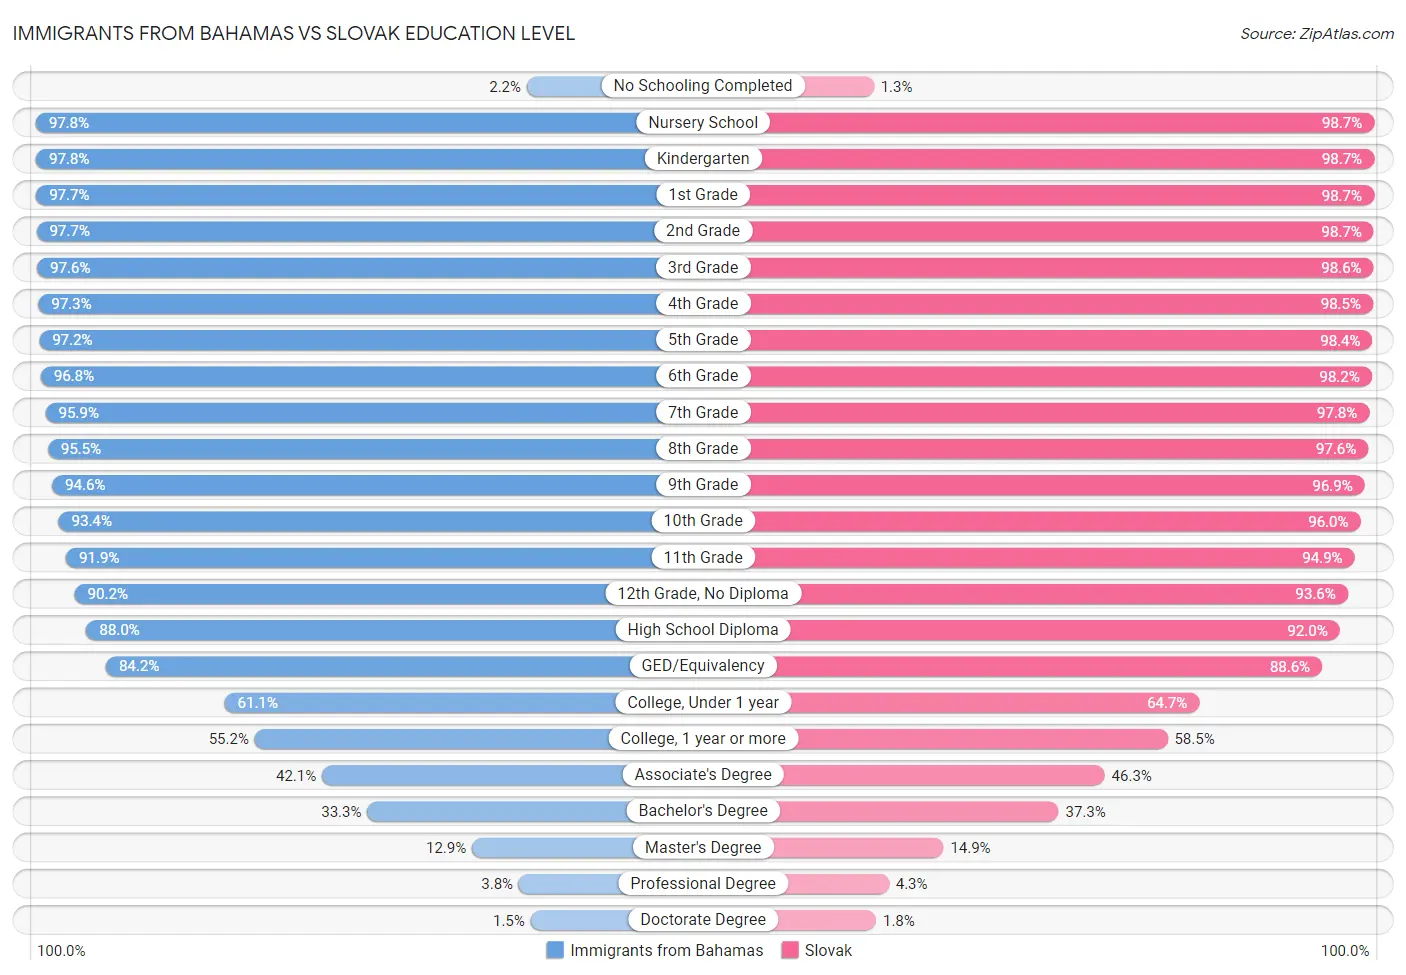 Immigrants from Bahamas vs Slovak Education Level